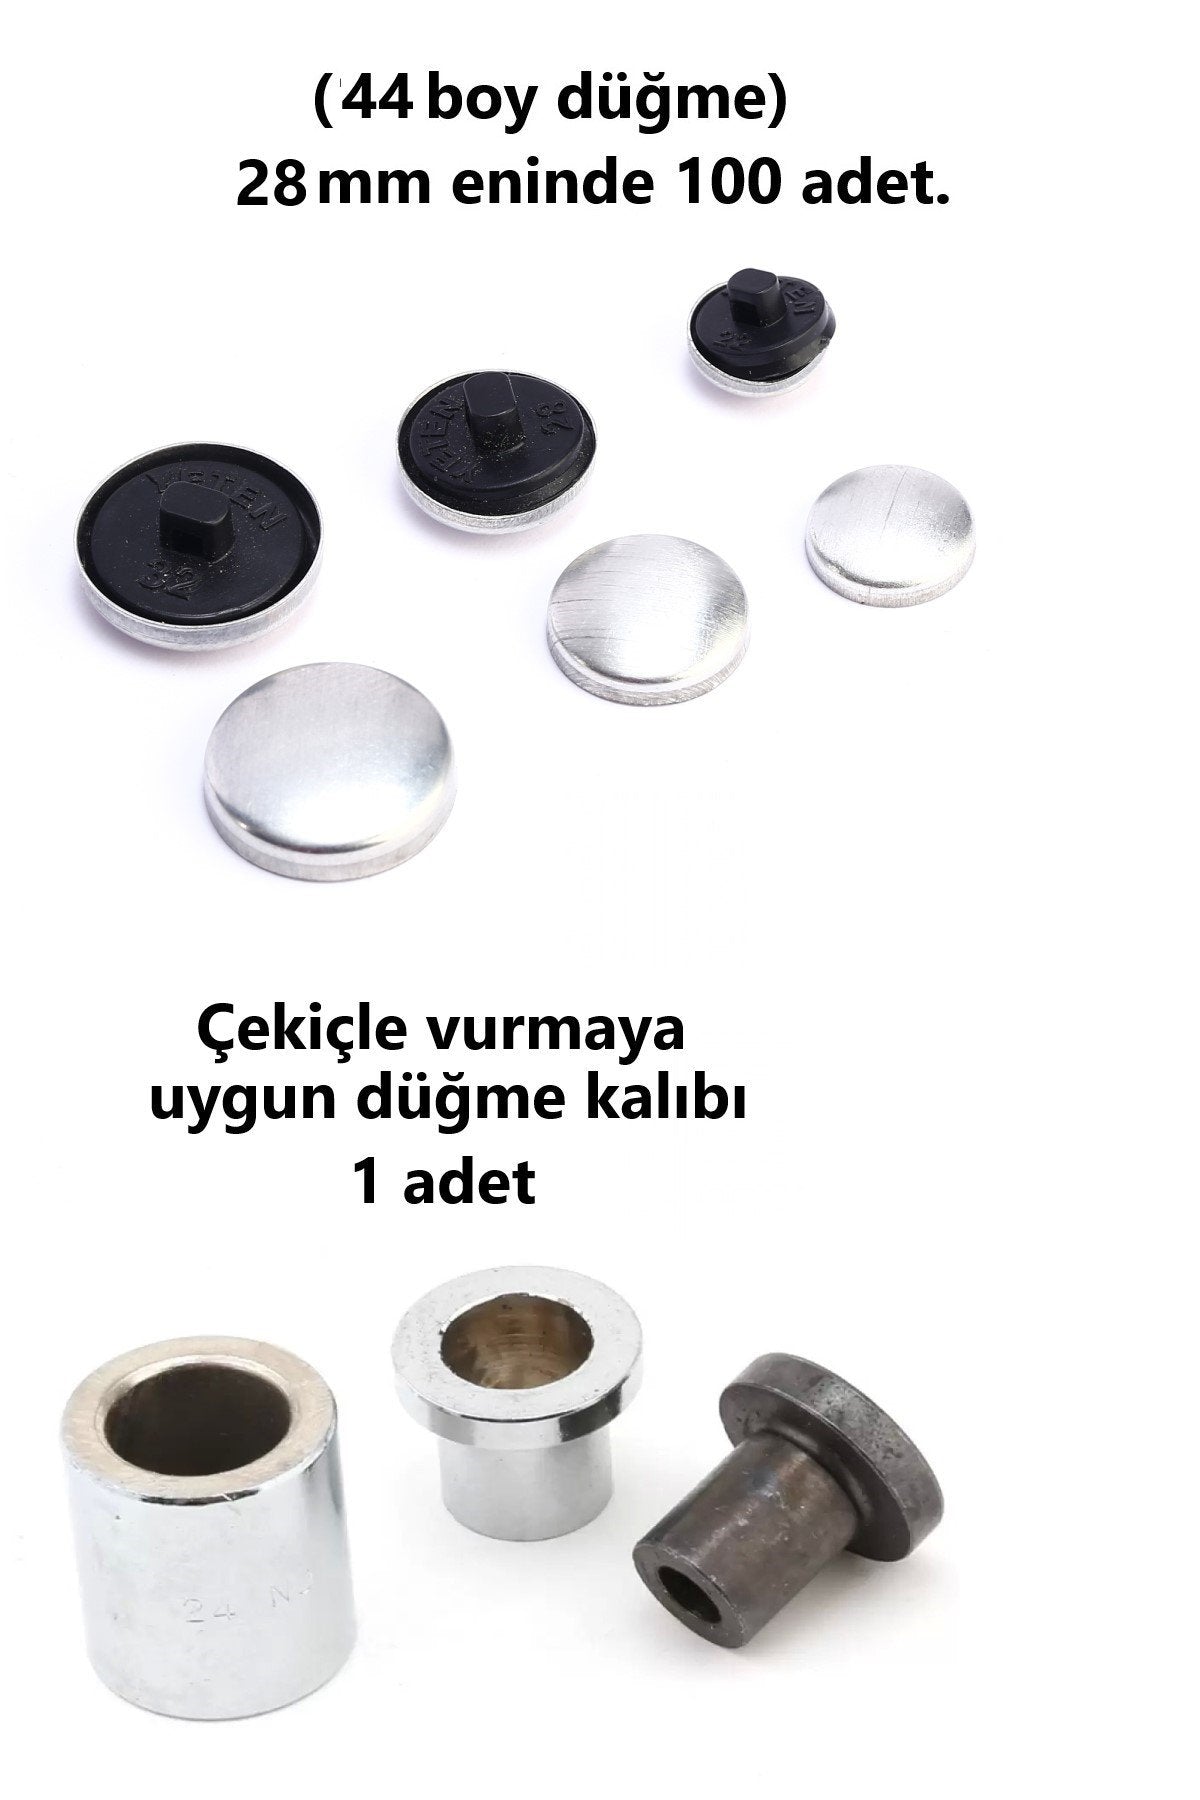 Kumaş Kaplama Düğme Yapım Seti - (44 Boy) 100 adet Düğme ve Kalıp  (28 mm)